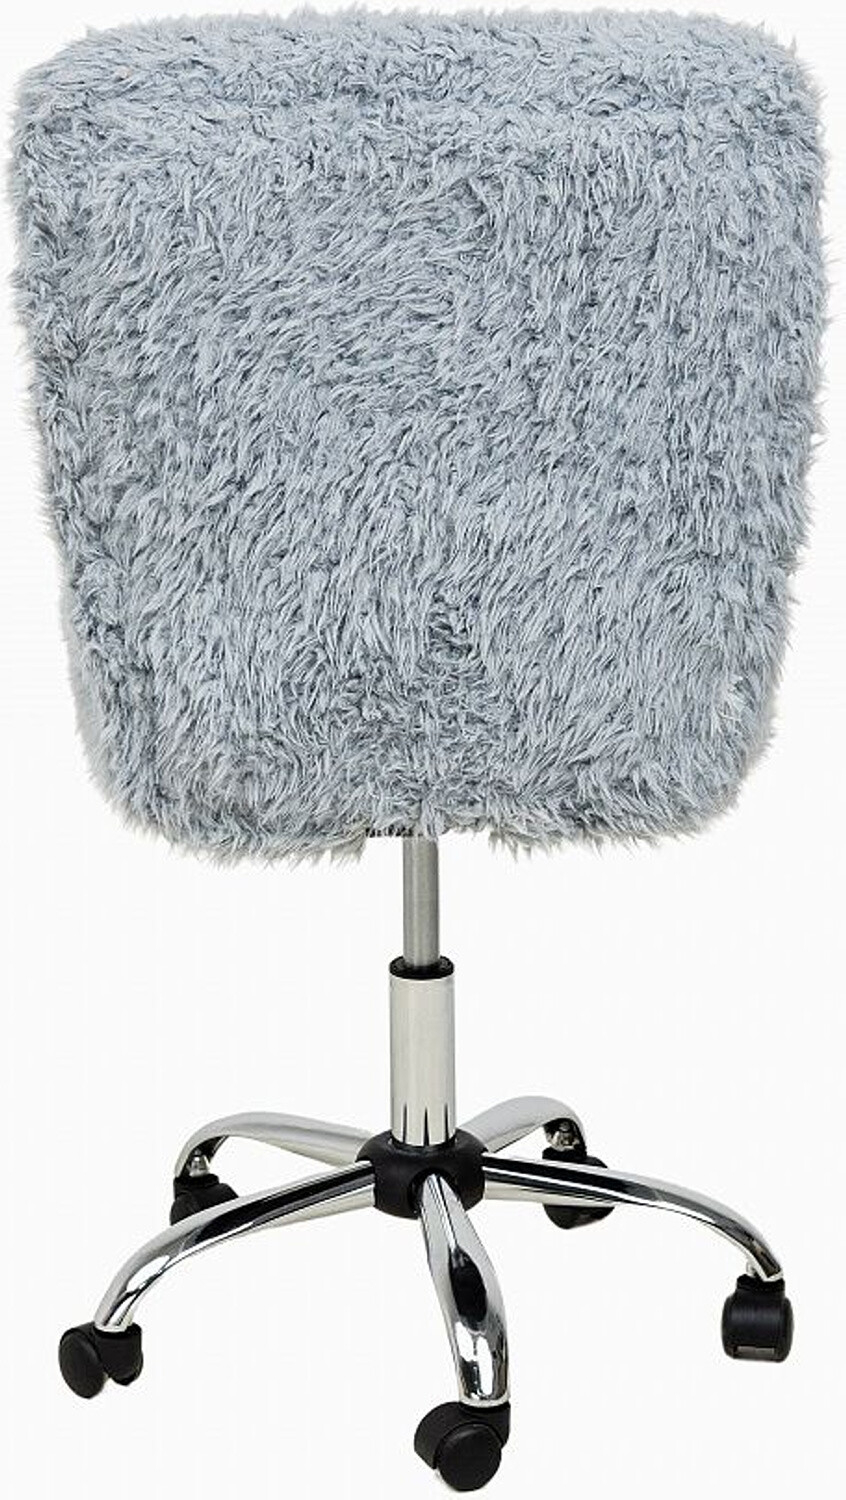 Кресло компьютерное AKSHOME Fluffy искусственный мех серый (86382) - Фото 5